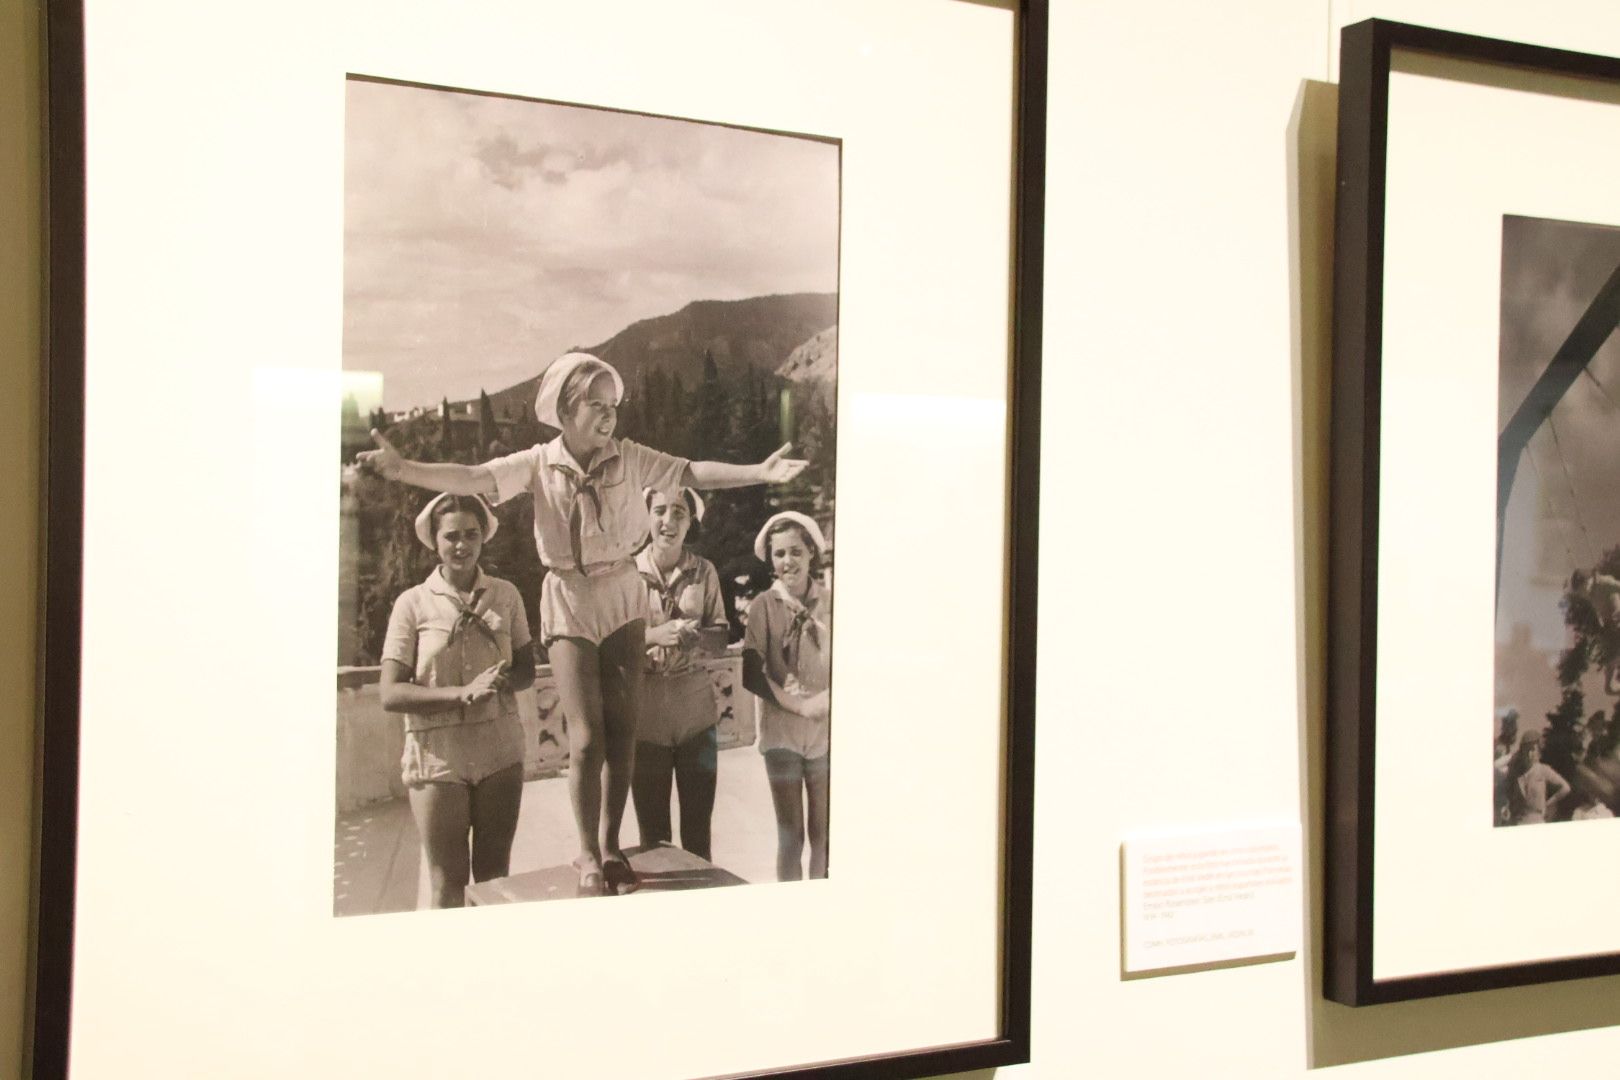  Exposición ‘Retratos de la infancia en los fondos fotográficos del CDMH' y 'El aula antigua' 